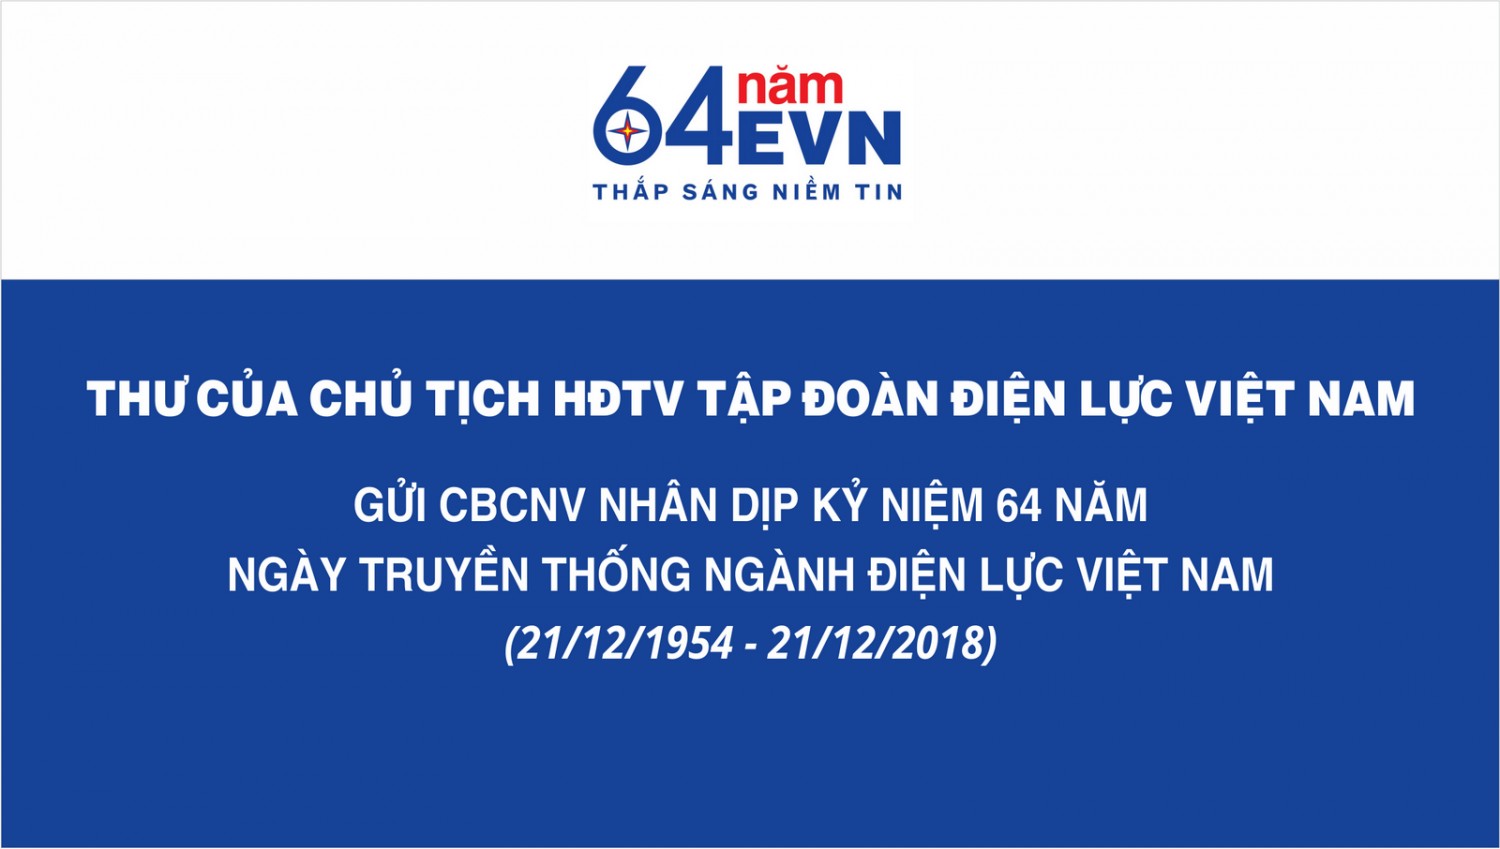 Thư của Chủ tịch HĐTV Tập đoàn Điện lực Việt Nam gửi CBCNV nhân dịp kỷ niệm 64 năm Ngày truyền thống ngành Điện lực Việt Nam (21/12/1954 - 21/12/2018)